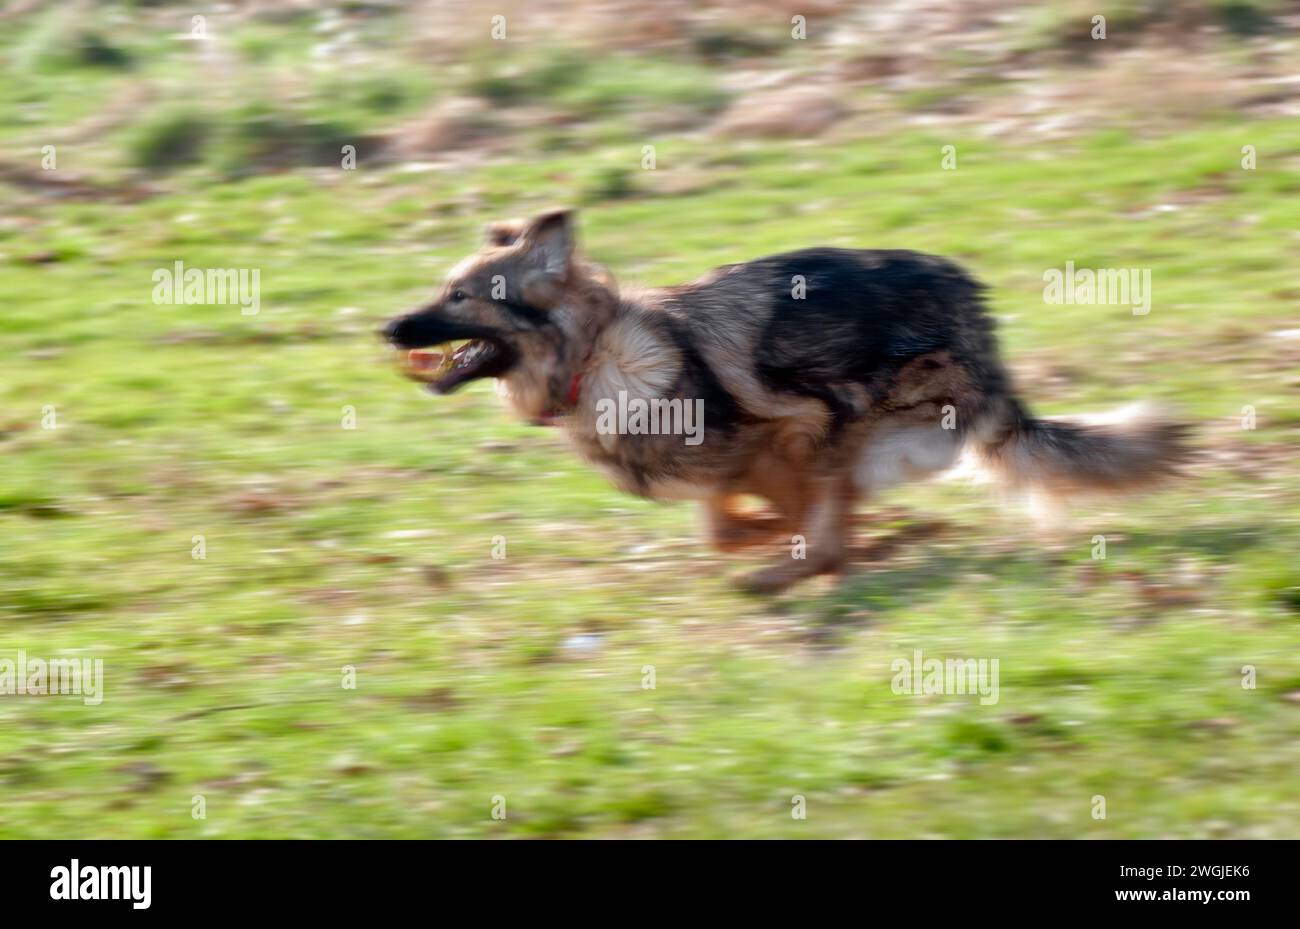 Perro pastor alemán corriendo con anillo de goma en la boca que muestra el desenfoque de movimiento Foto de stock